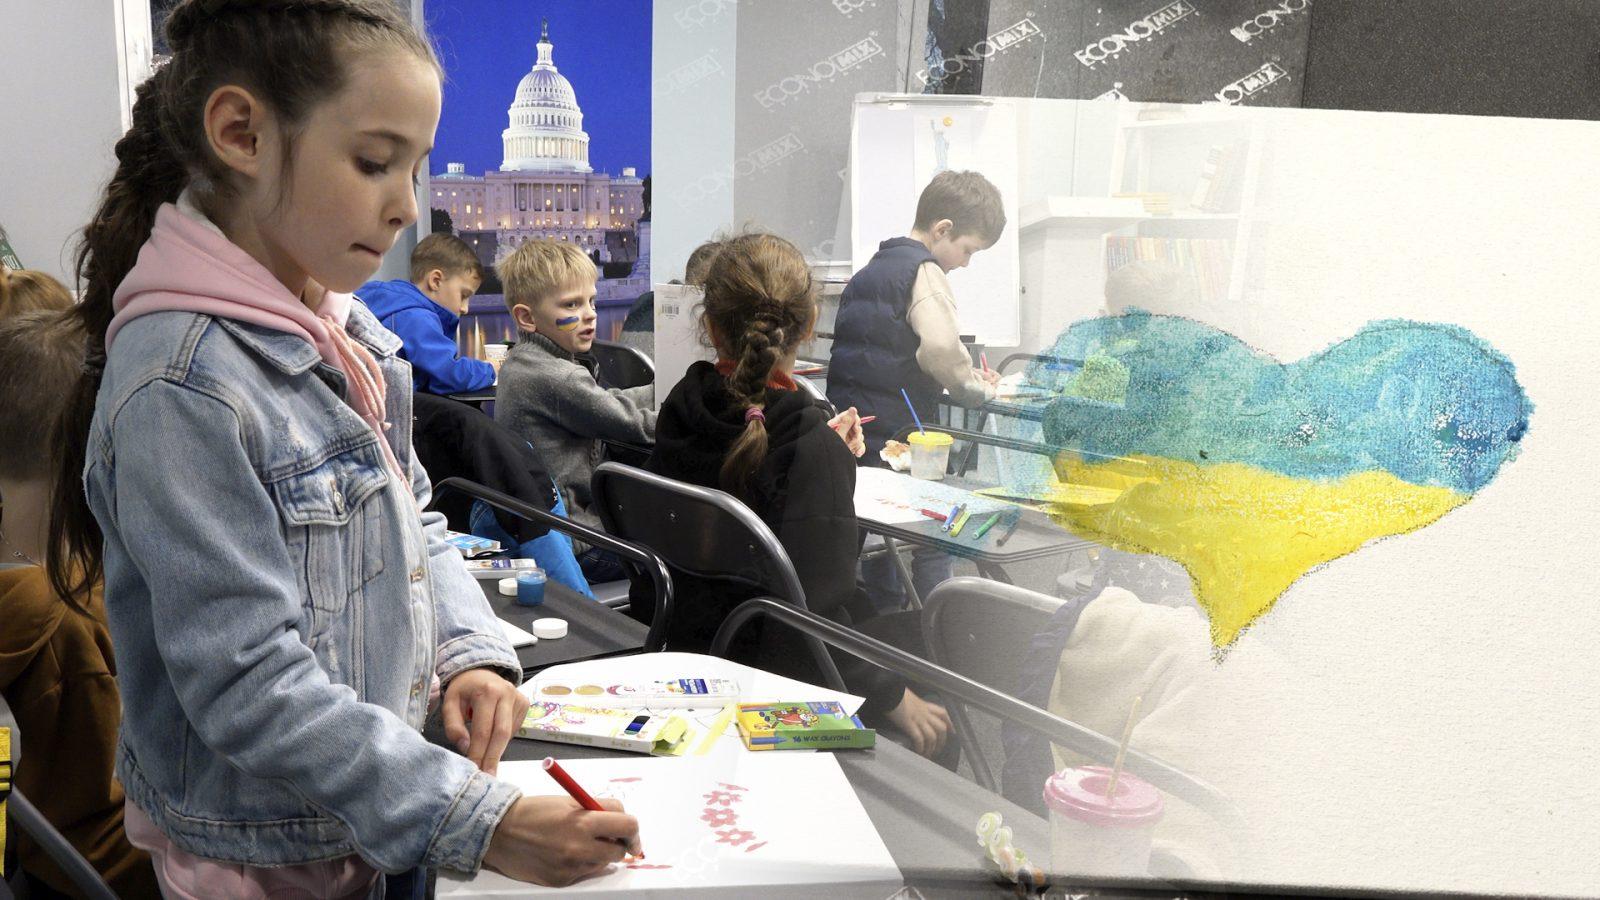 /ВИДЕО/ Как дети из Украины видят МИР. В Бельцах был организован урок по живописи